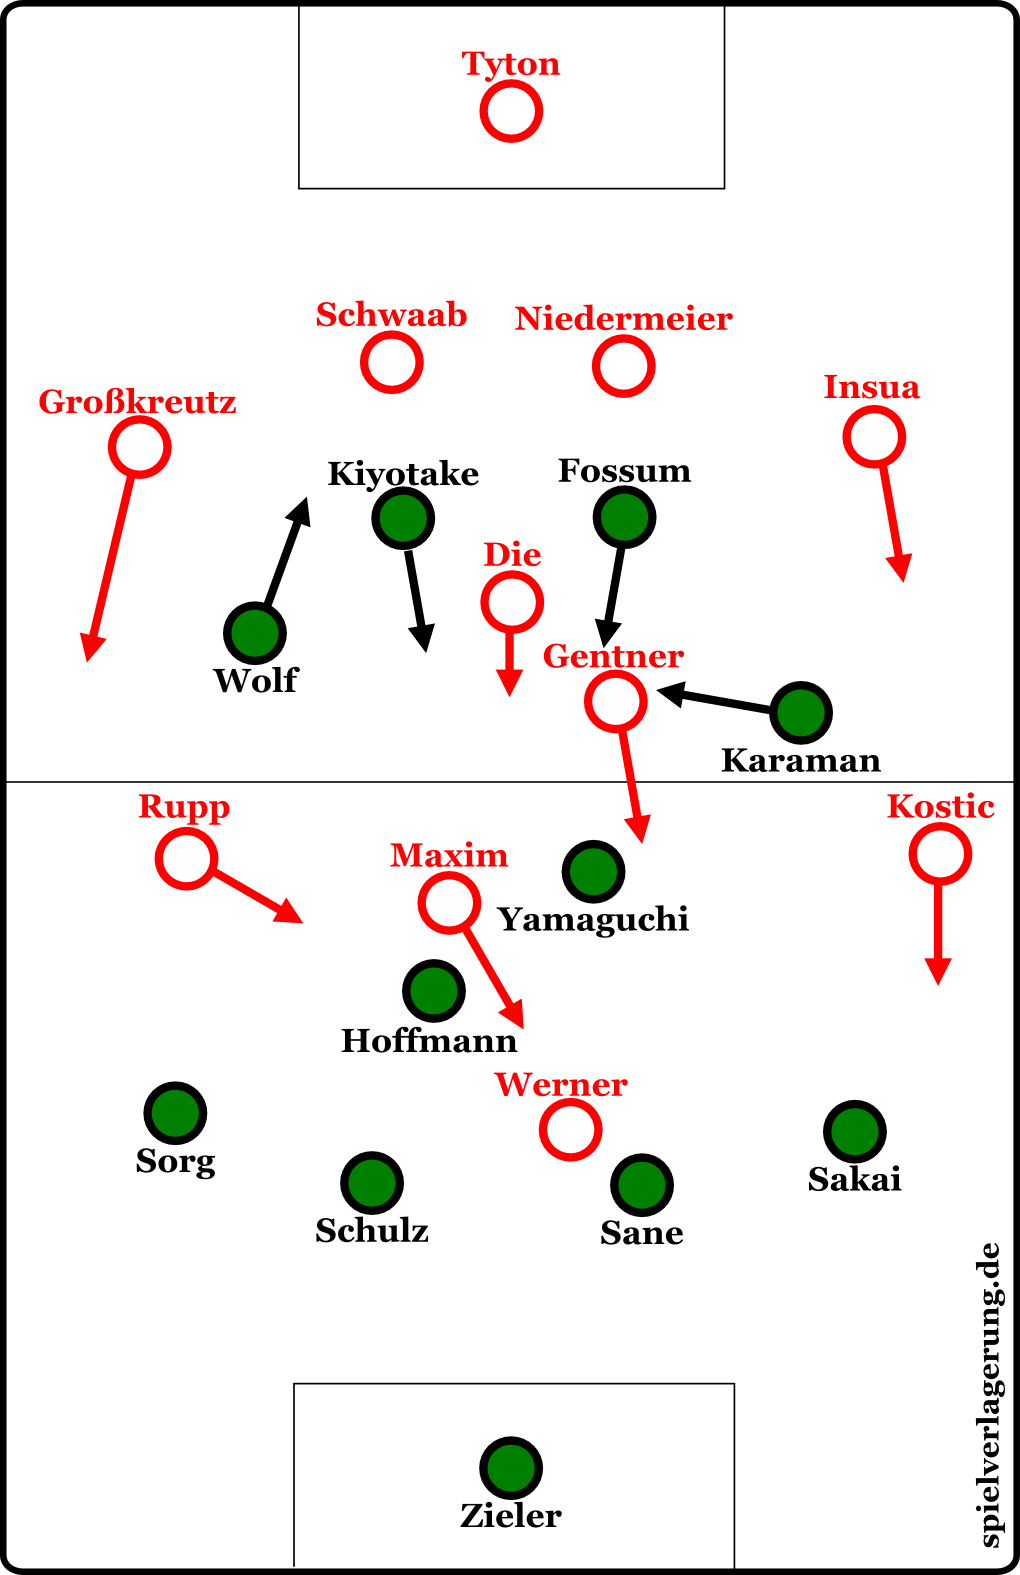 Hannover gegen Stuttgart, die Grundformation. Kiyotake, Fossum und Karaman überluden den Zehnerraum.